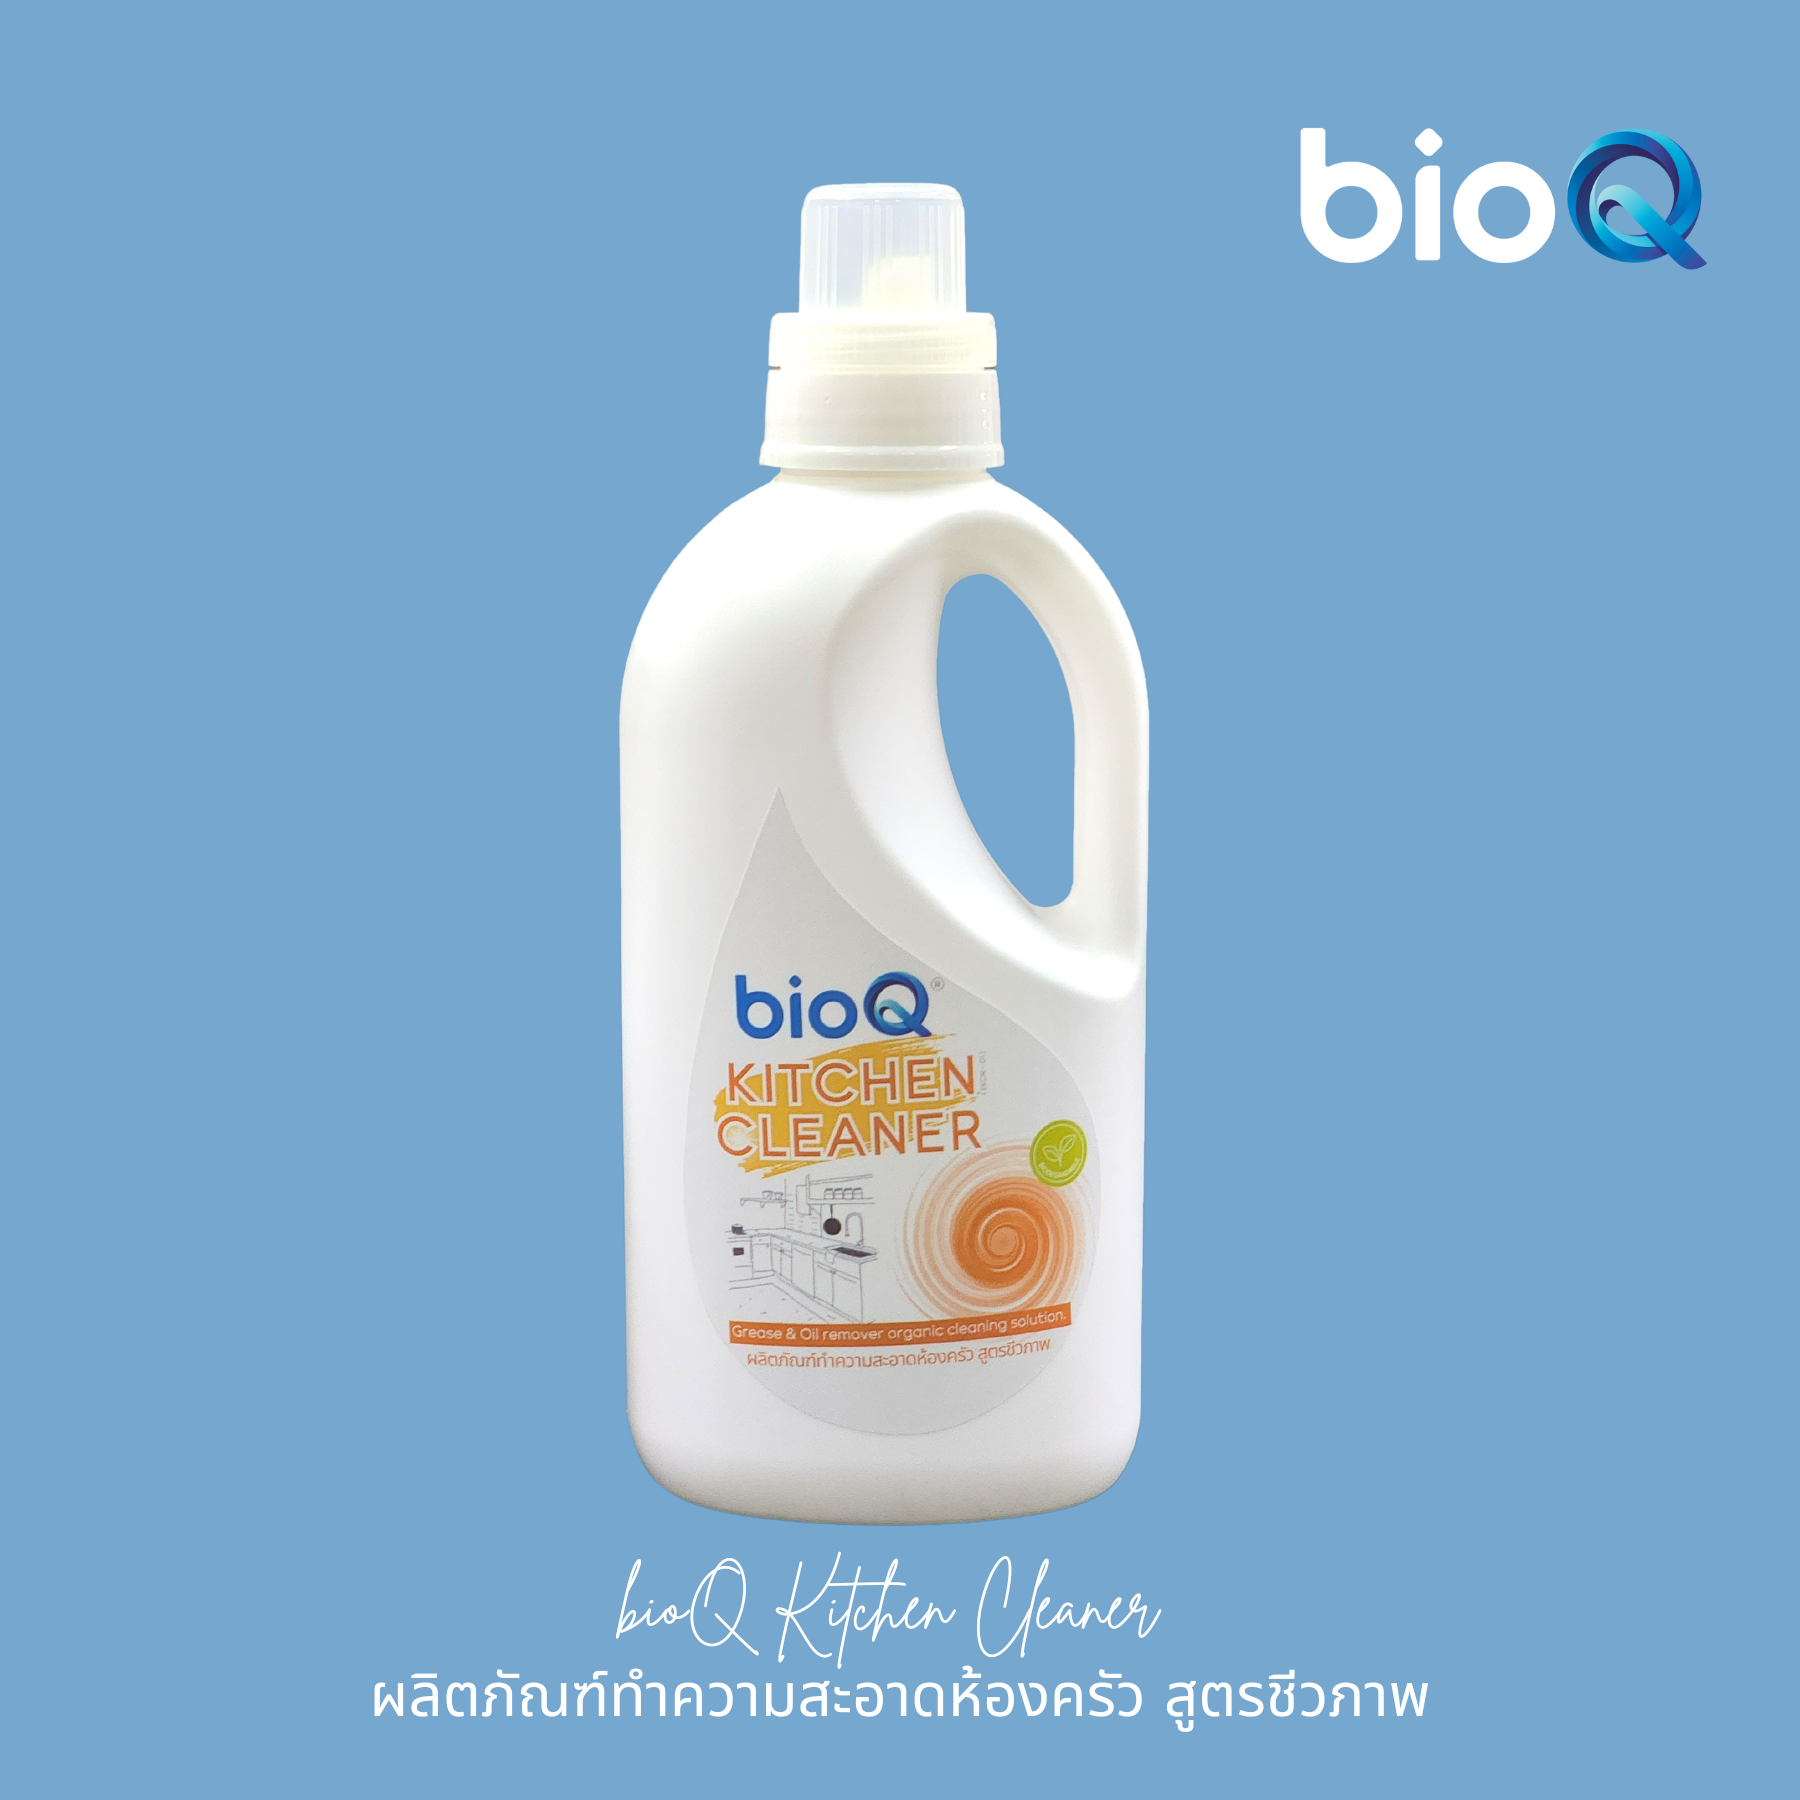 ผลิตภัณฑ์ทำความสะอาดห้องครัว ไบโอคิว คิทเช่น คลีนเนอร์  / bioQ Kitchen Cleaner 1000 ml.